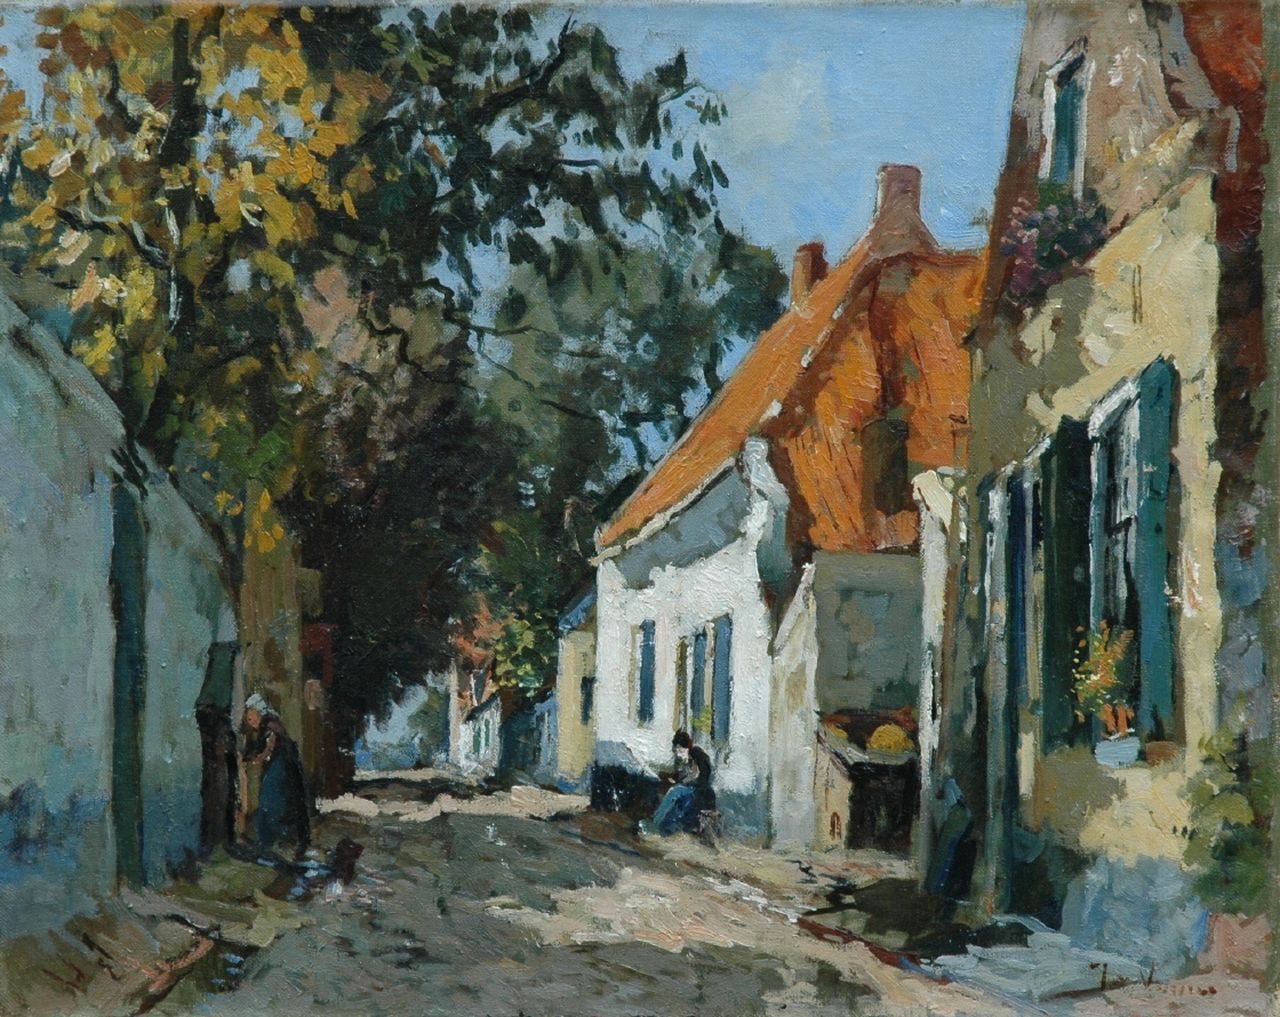 Vuuren J. van | Jan van Vuuren, A sunlit street, Elburg, oil on canvas 40.2 x 50.2 cm, signed l.r.